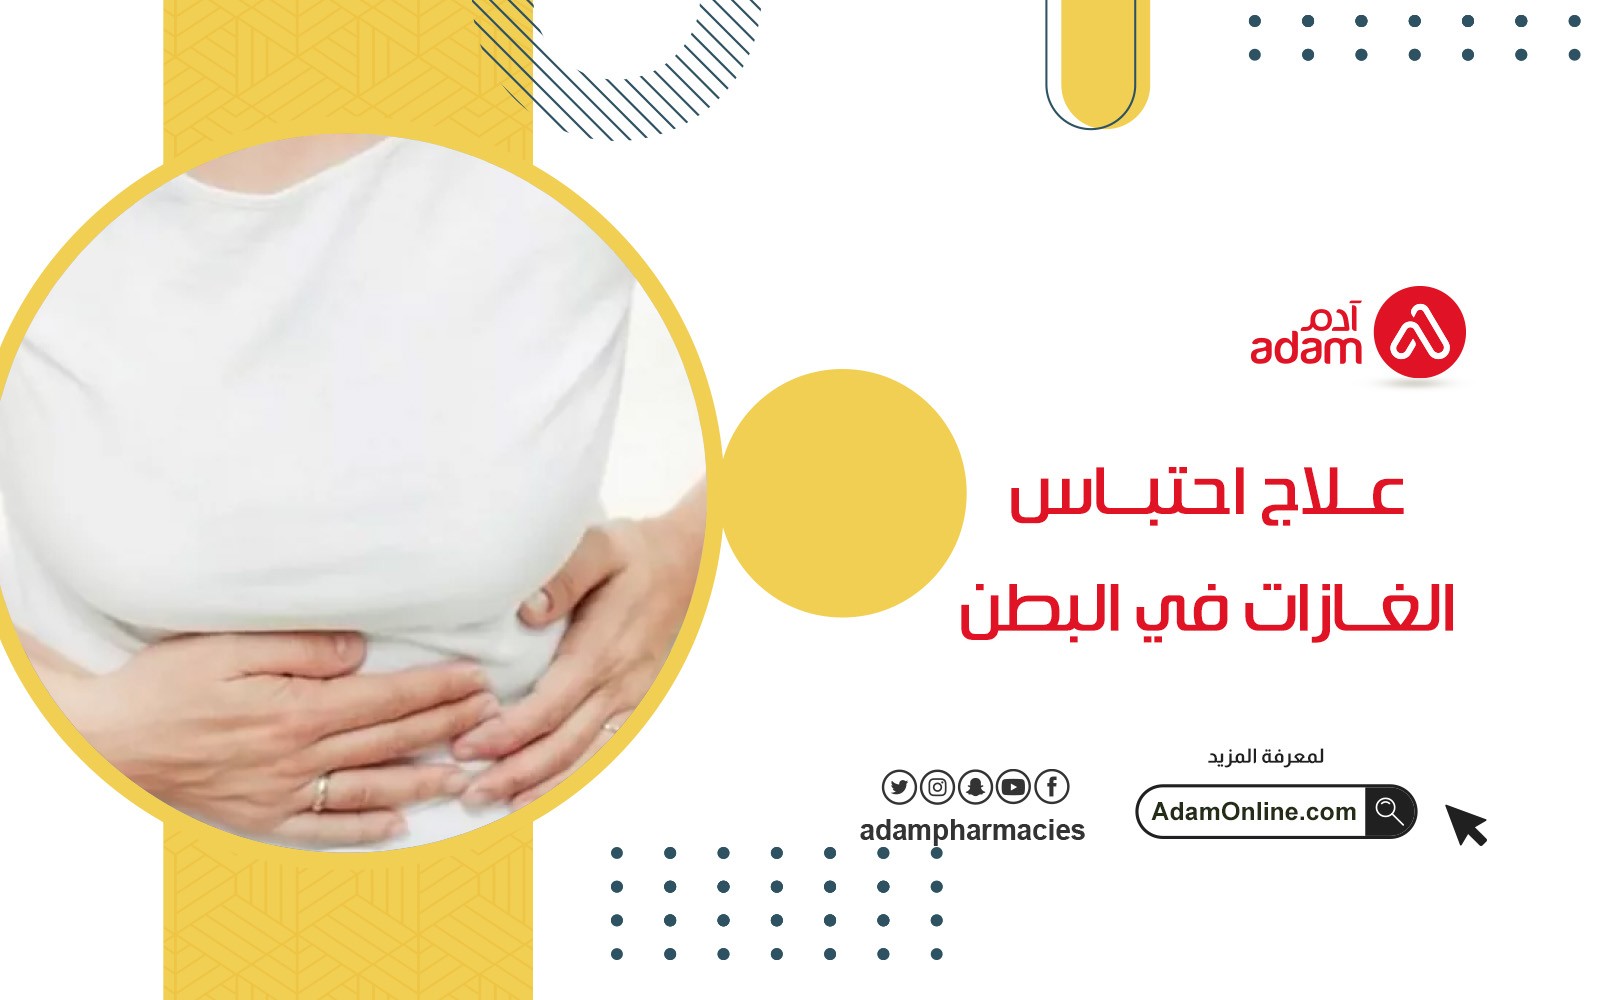 Treatment of gas retention in the abdomen